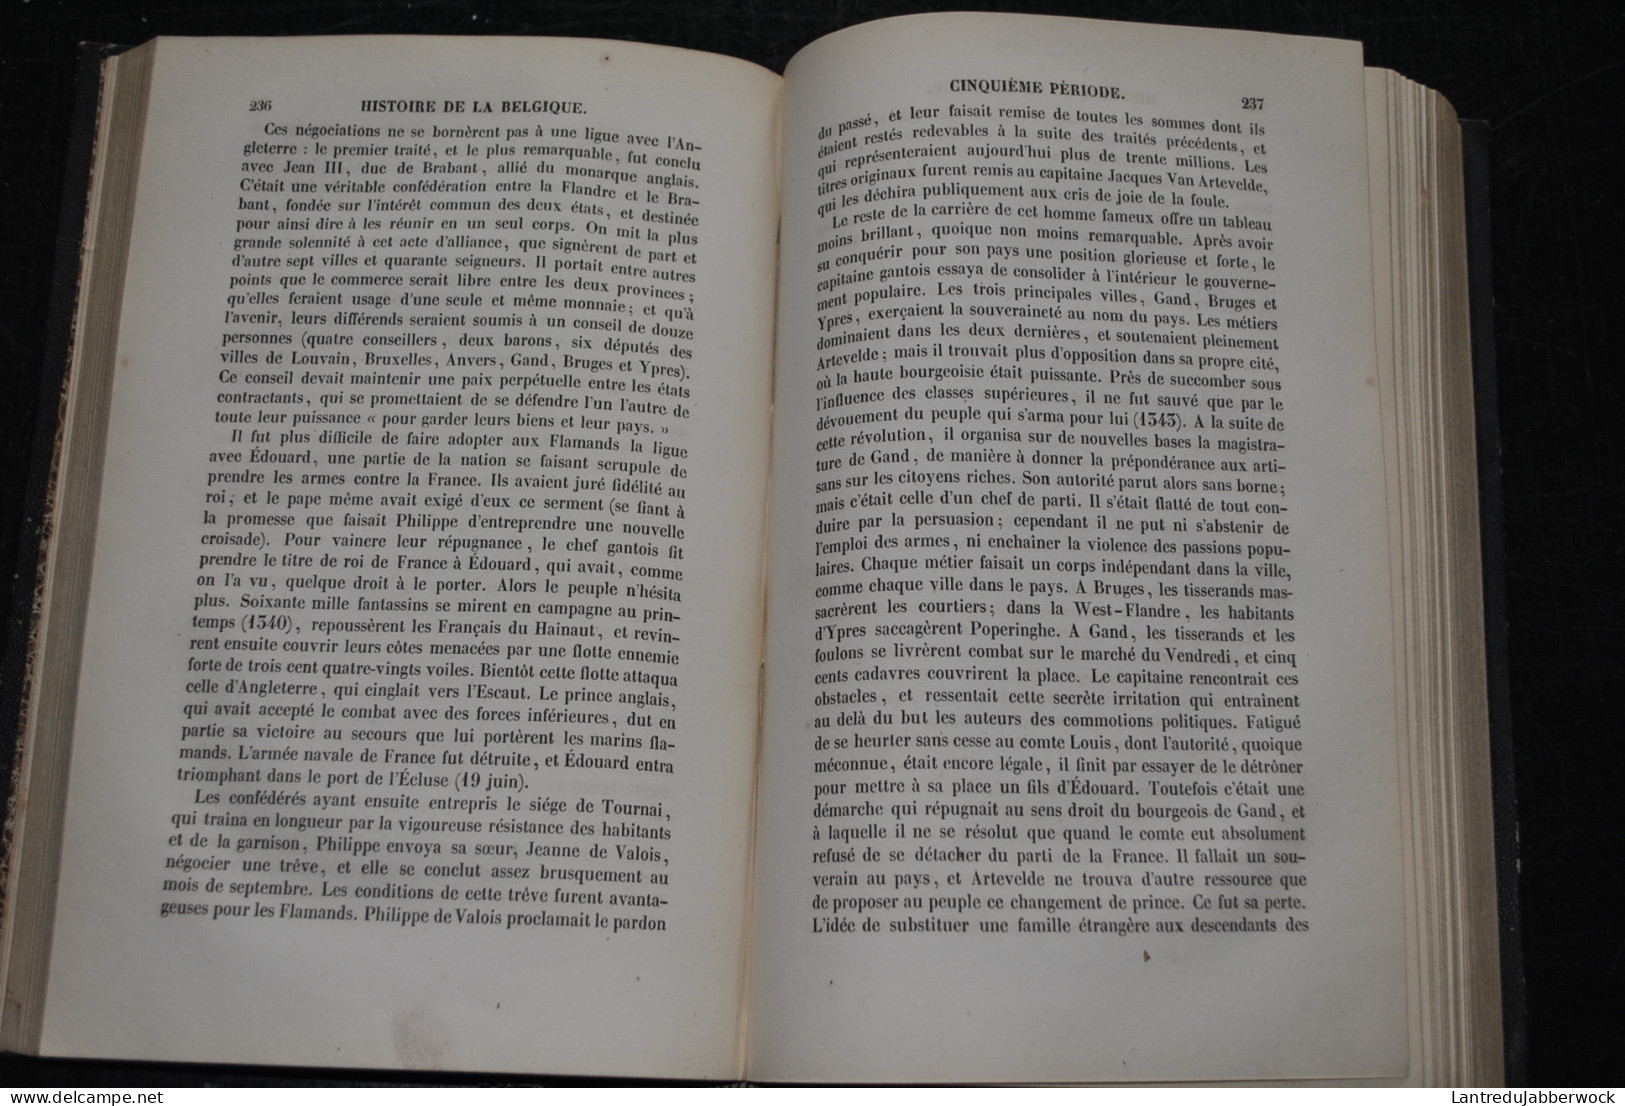 H.G. MOKE Histoire De La Belgique Bivort-Crowie Libraire éditeur Gand - S.d. 3è édition + Arbre Généalogique RARE XIXè - Belgium